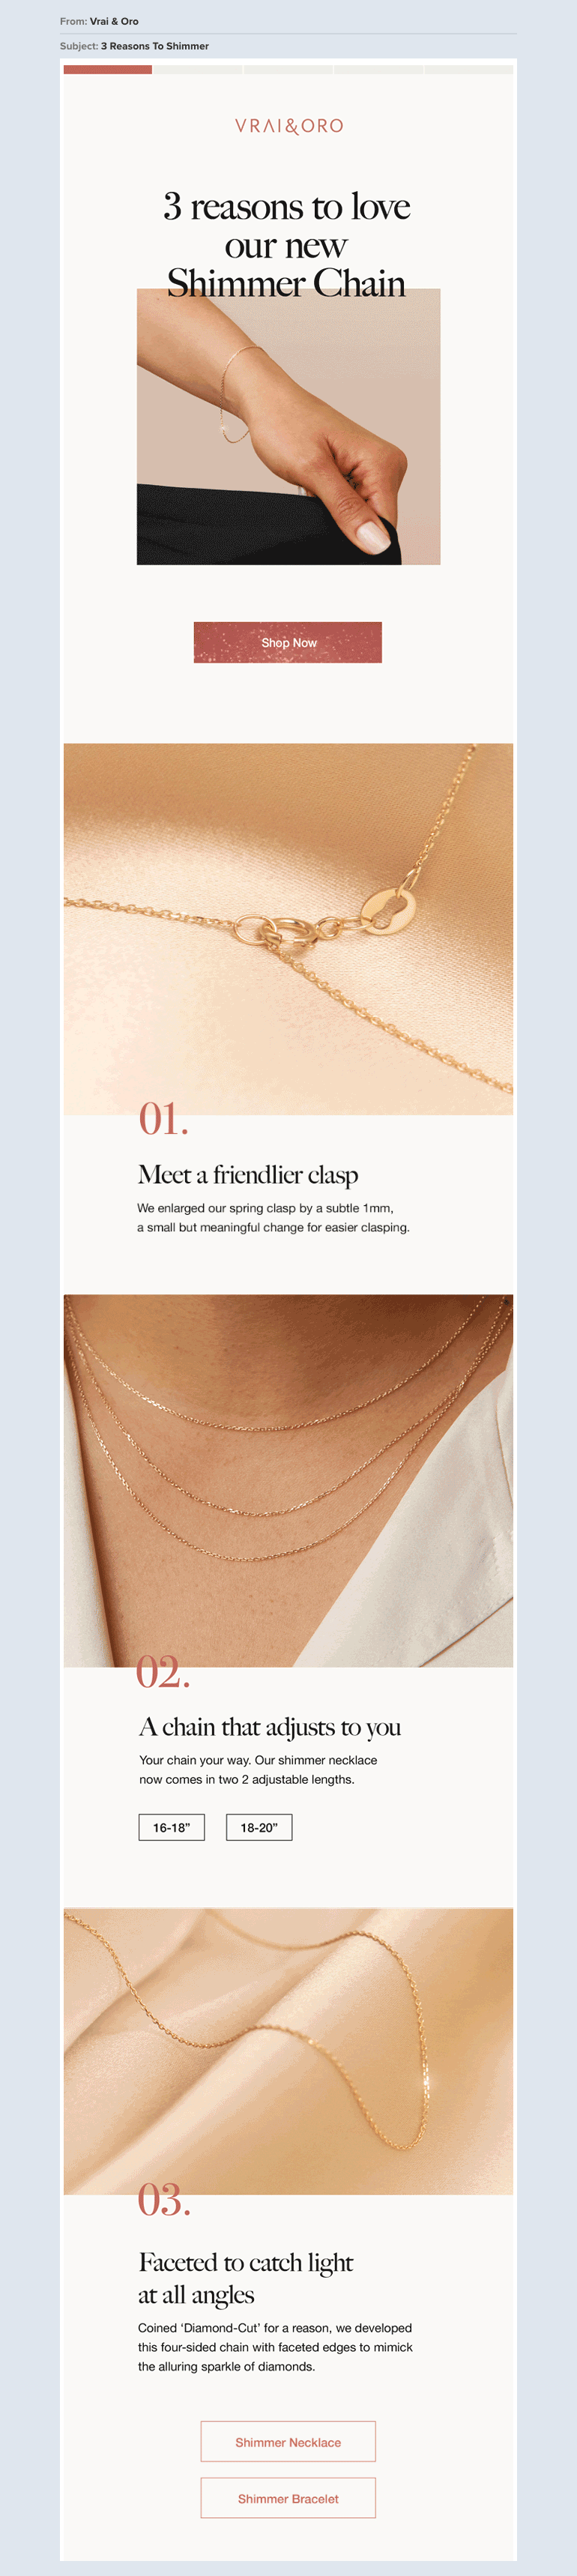 Vrai & Oro ecommerce luxury jewelry newsletter example